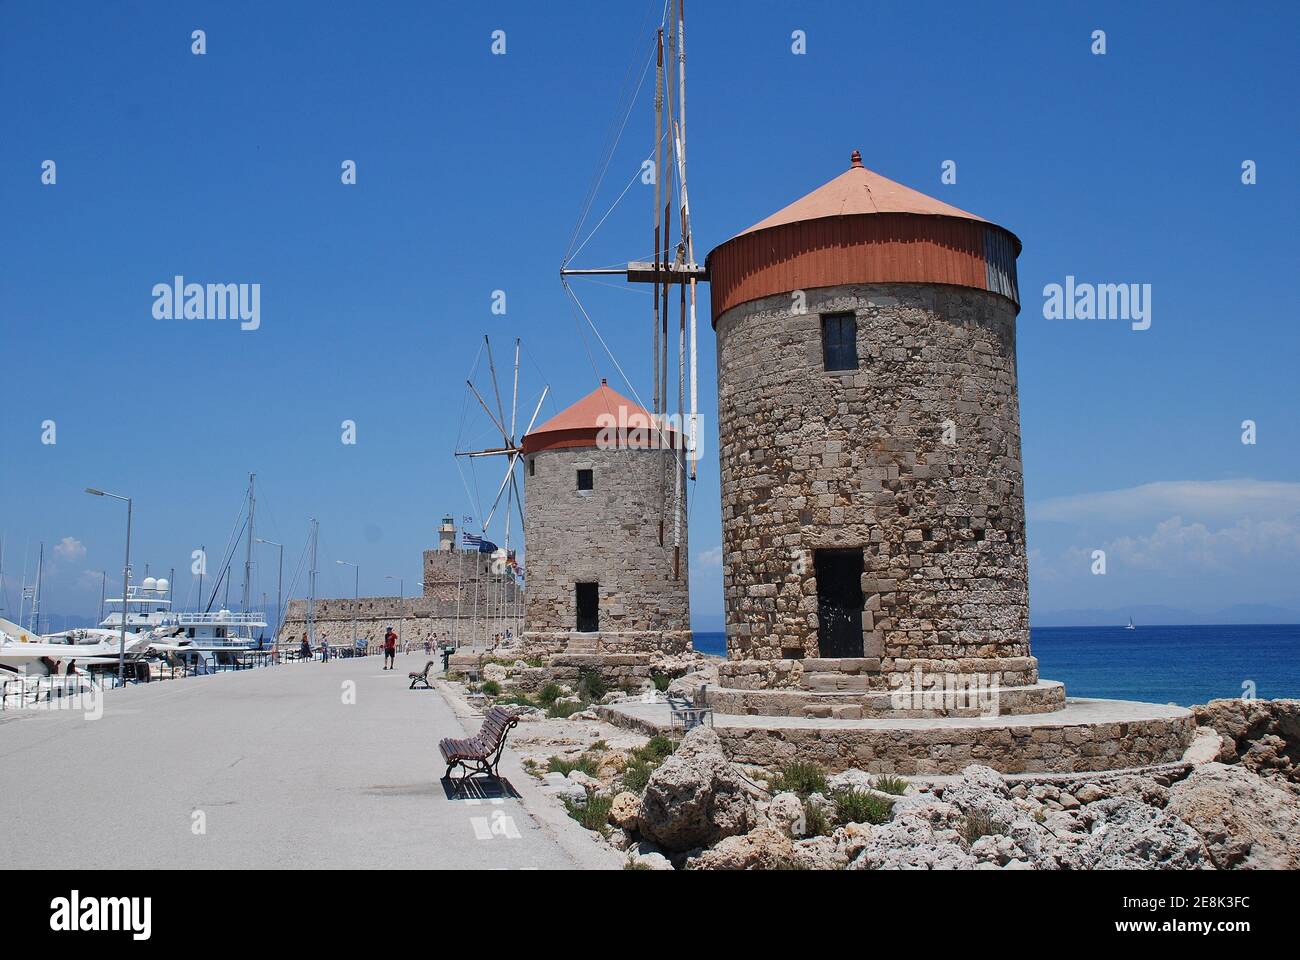 Les moulins à vent médiévaux en pierre du port de Mandraki dans la vieille ville de l'île grecque de Rhodes le 9 juin 2019. Banque D'Images